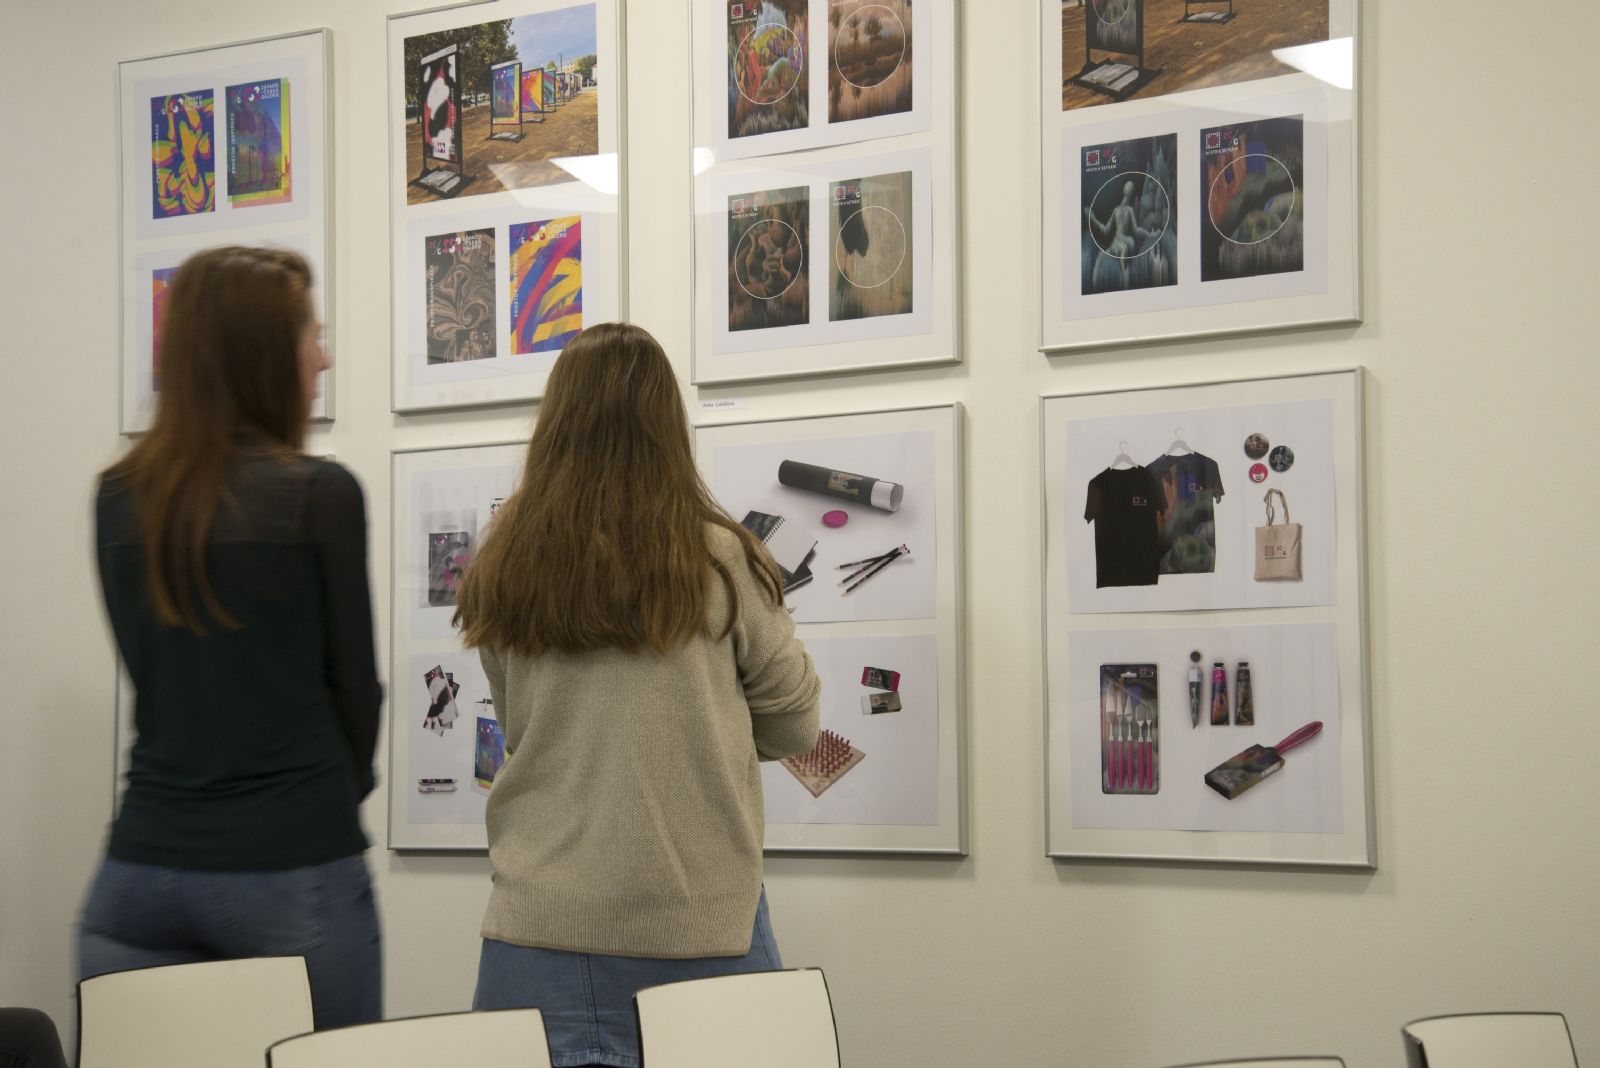 Studenti Sutnarky vystavují v Západočeské galerii